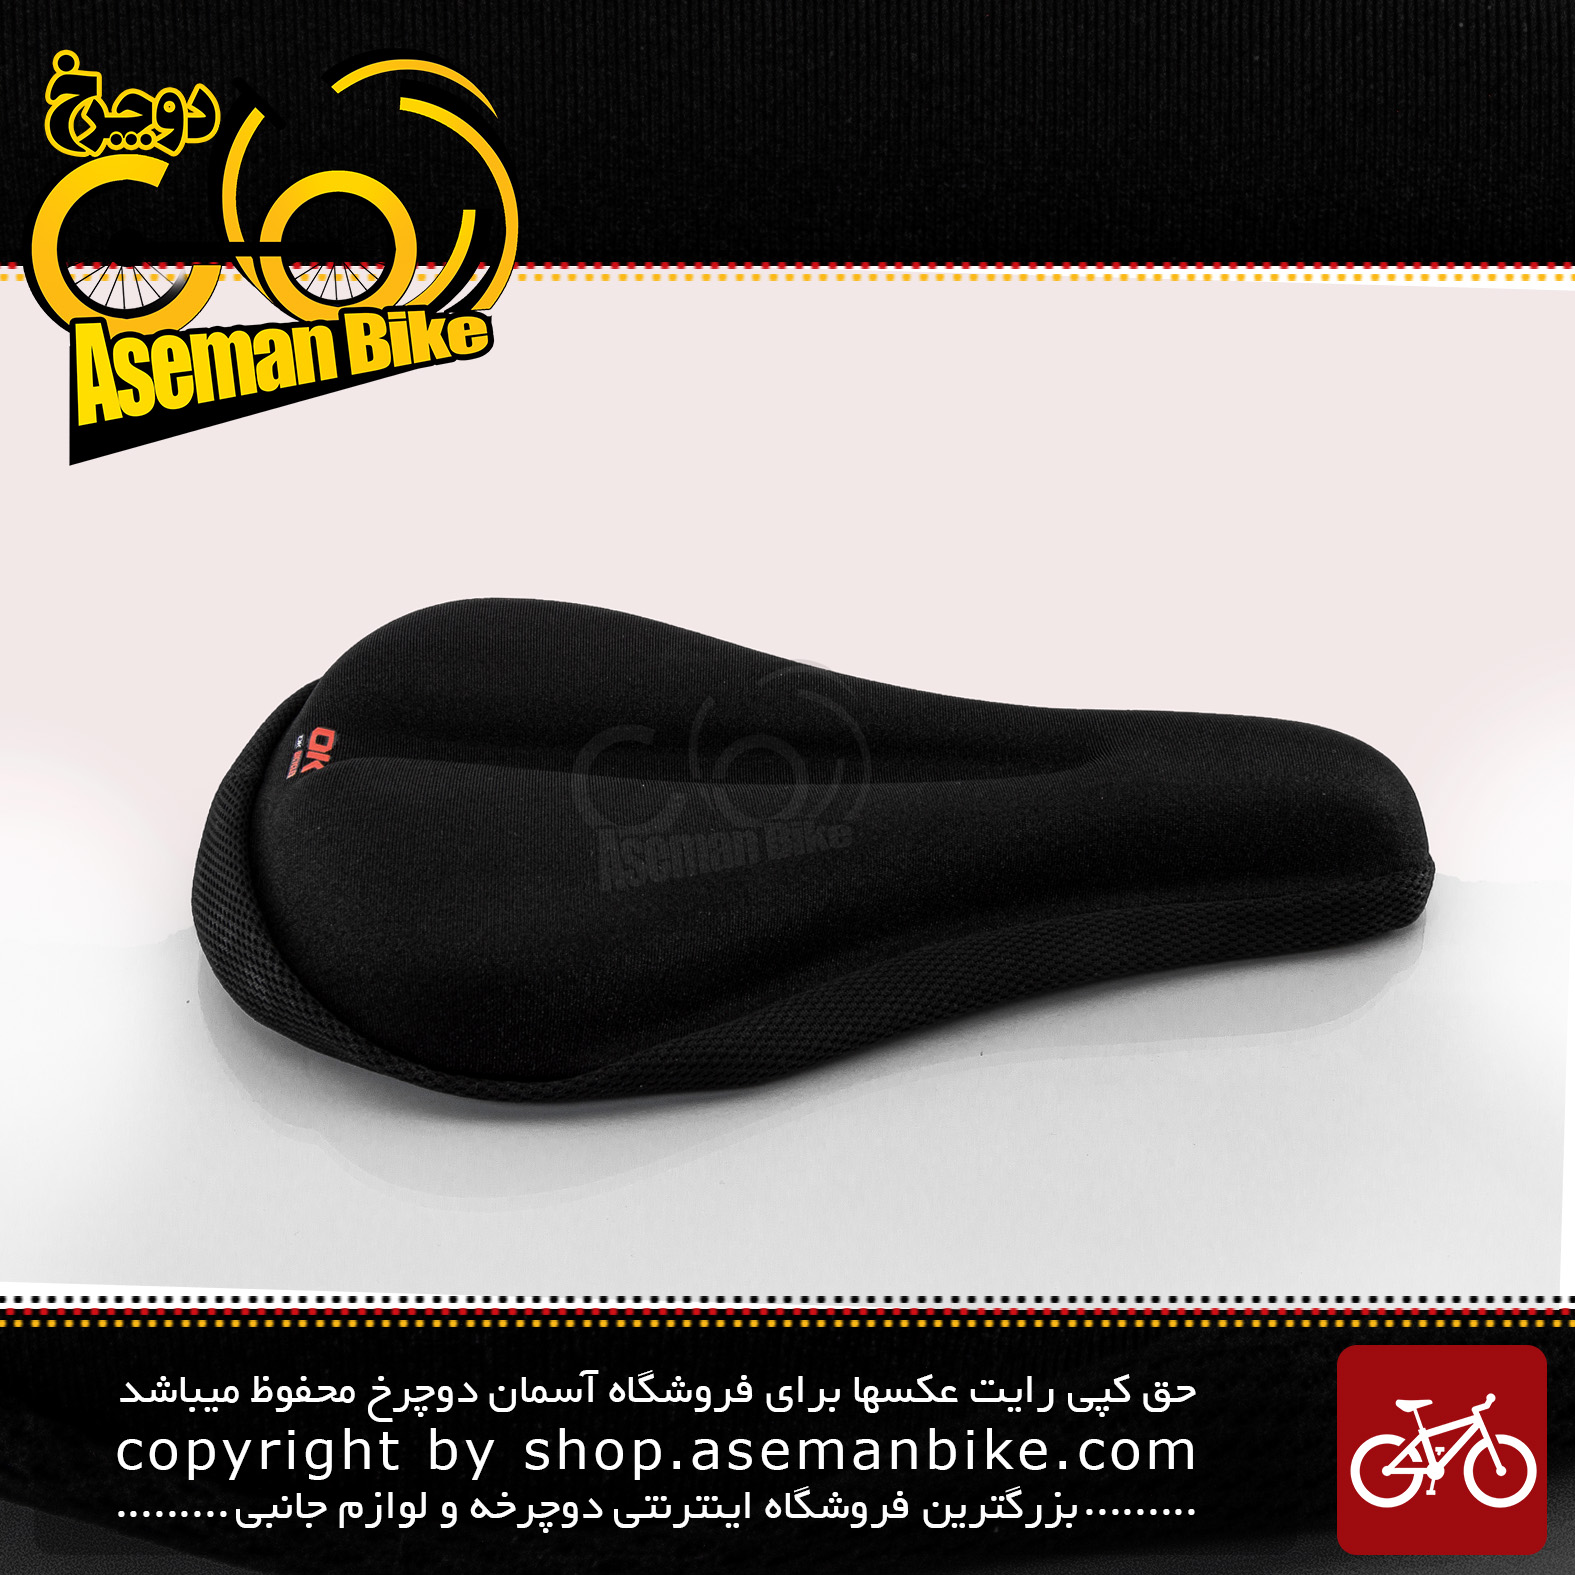 روکش زین دوچرخه اوکی مدل 10007028 ژل دار مشکی مناسب برای دوچرخه سایز 26 OK Bicycle Saddle cover 10007028 Black